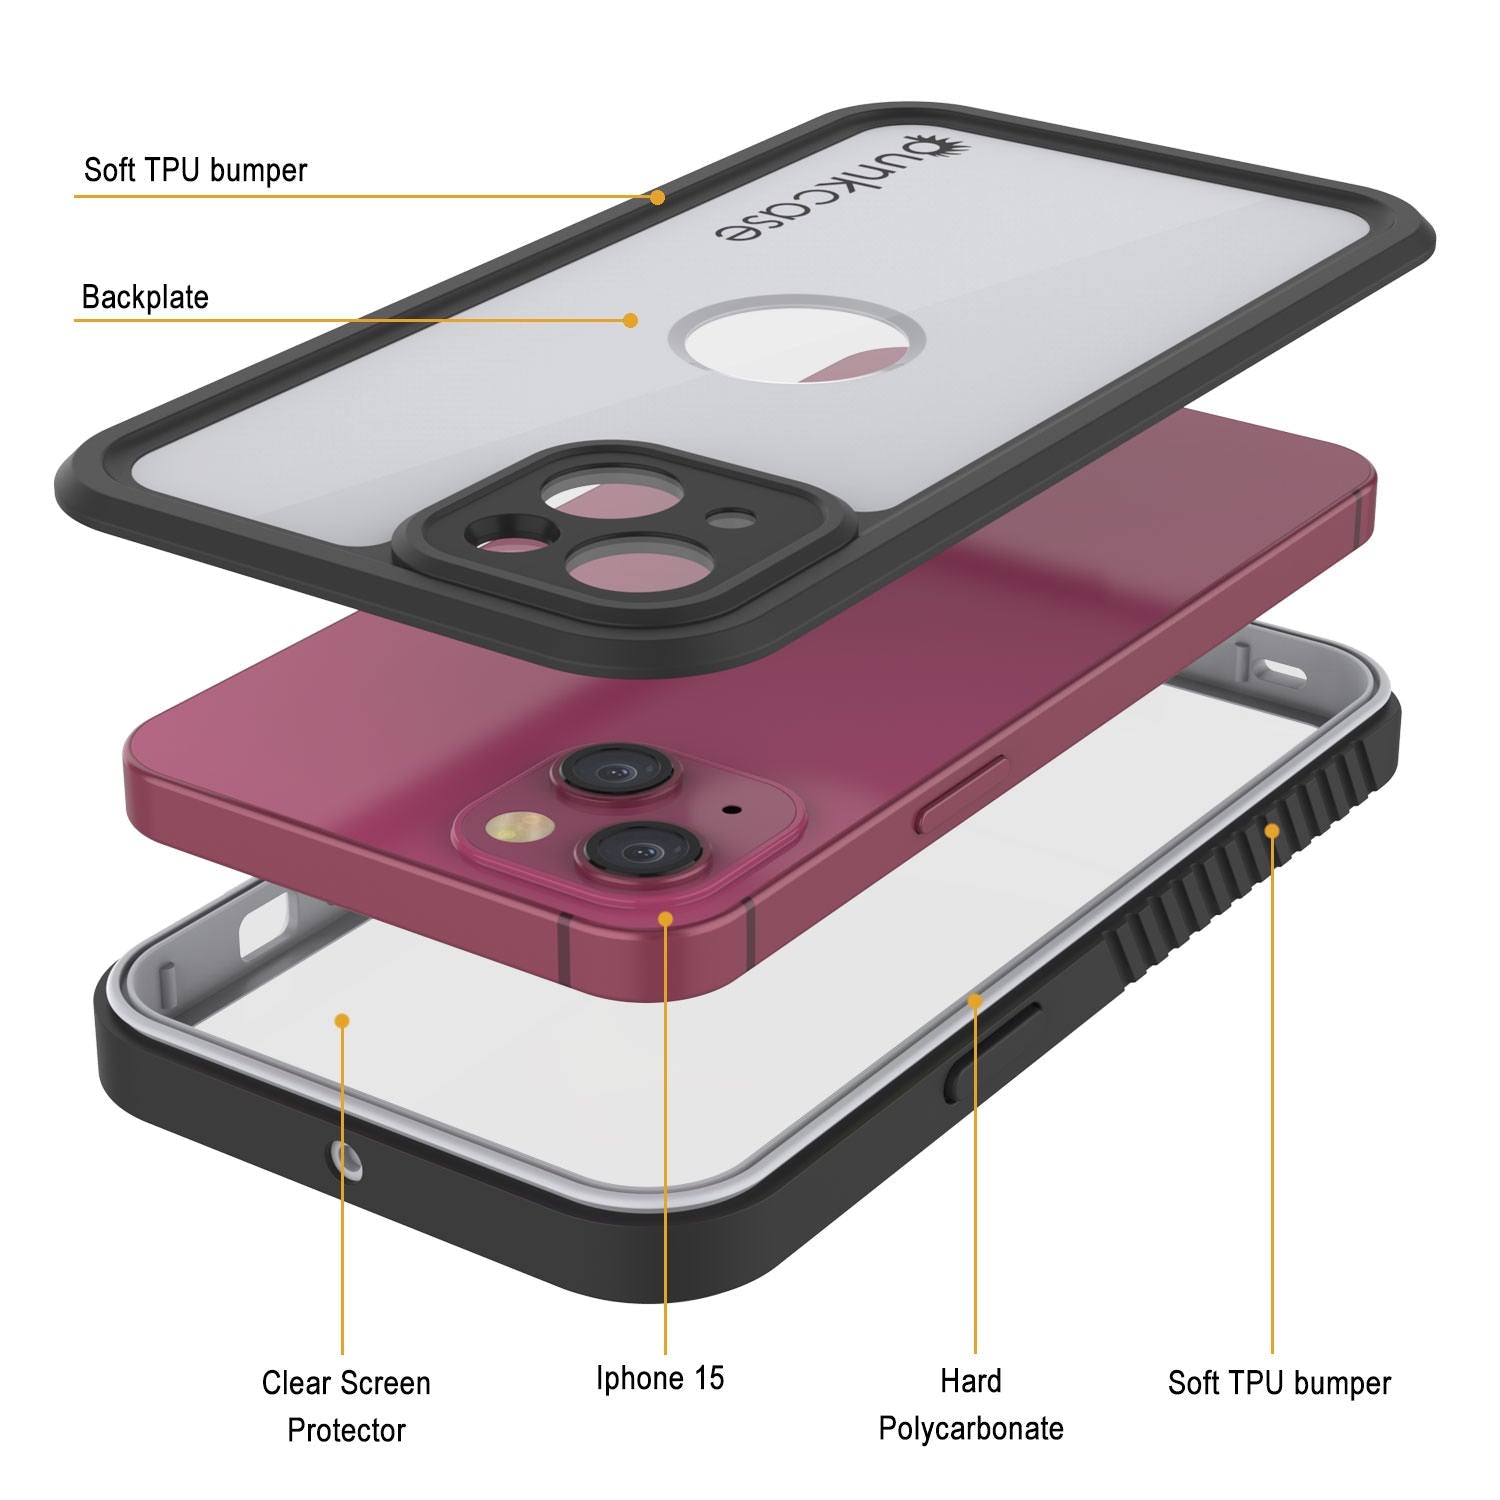 iPhone 15 Waterproof IP68 Case, Punkcase [White] [StudStar Series] [Slim Fit] [Dirtproof]